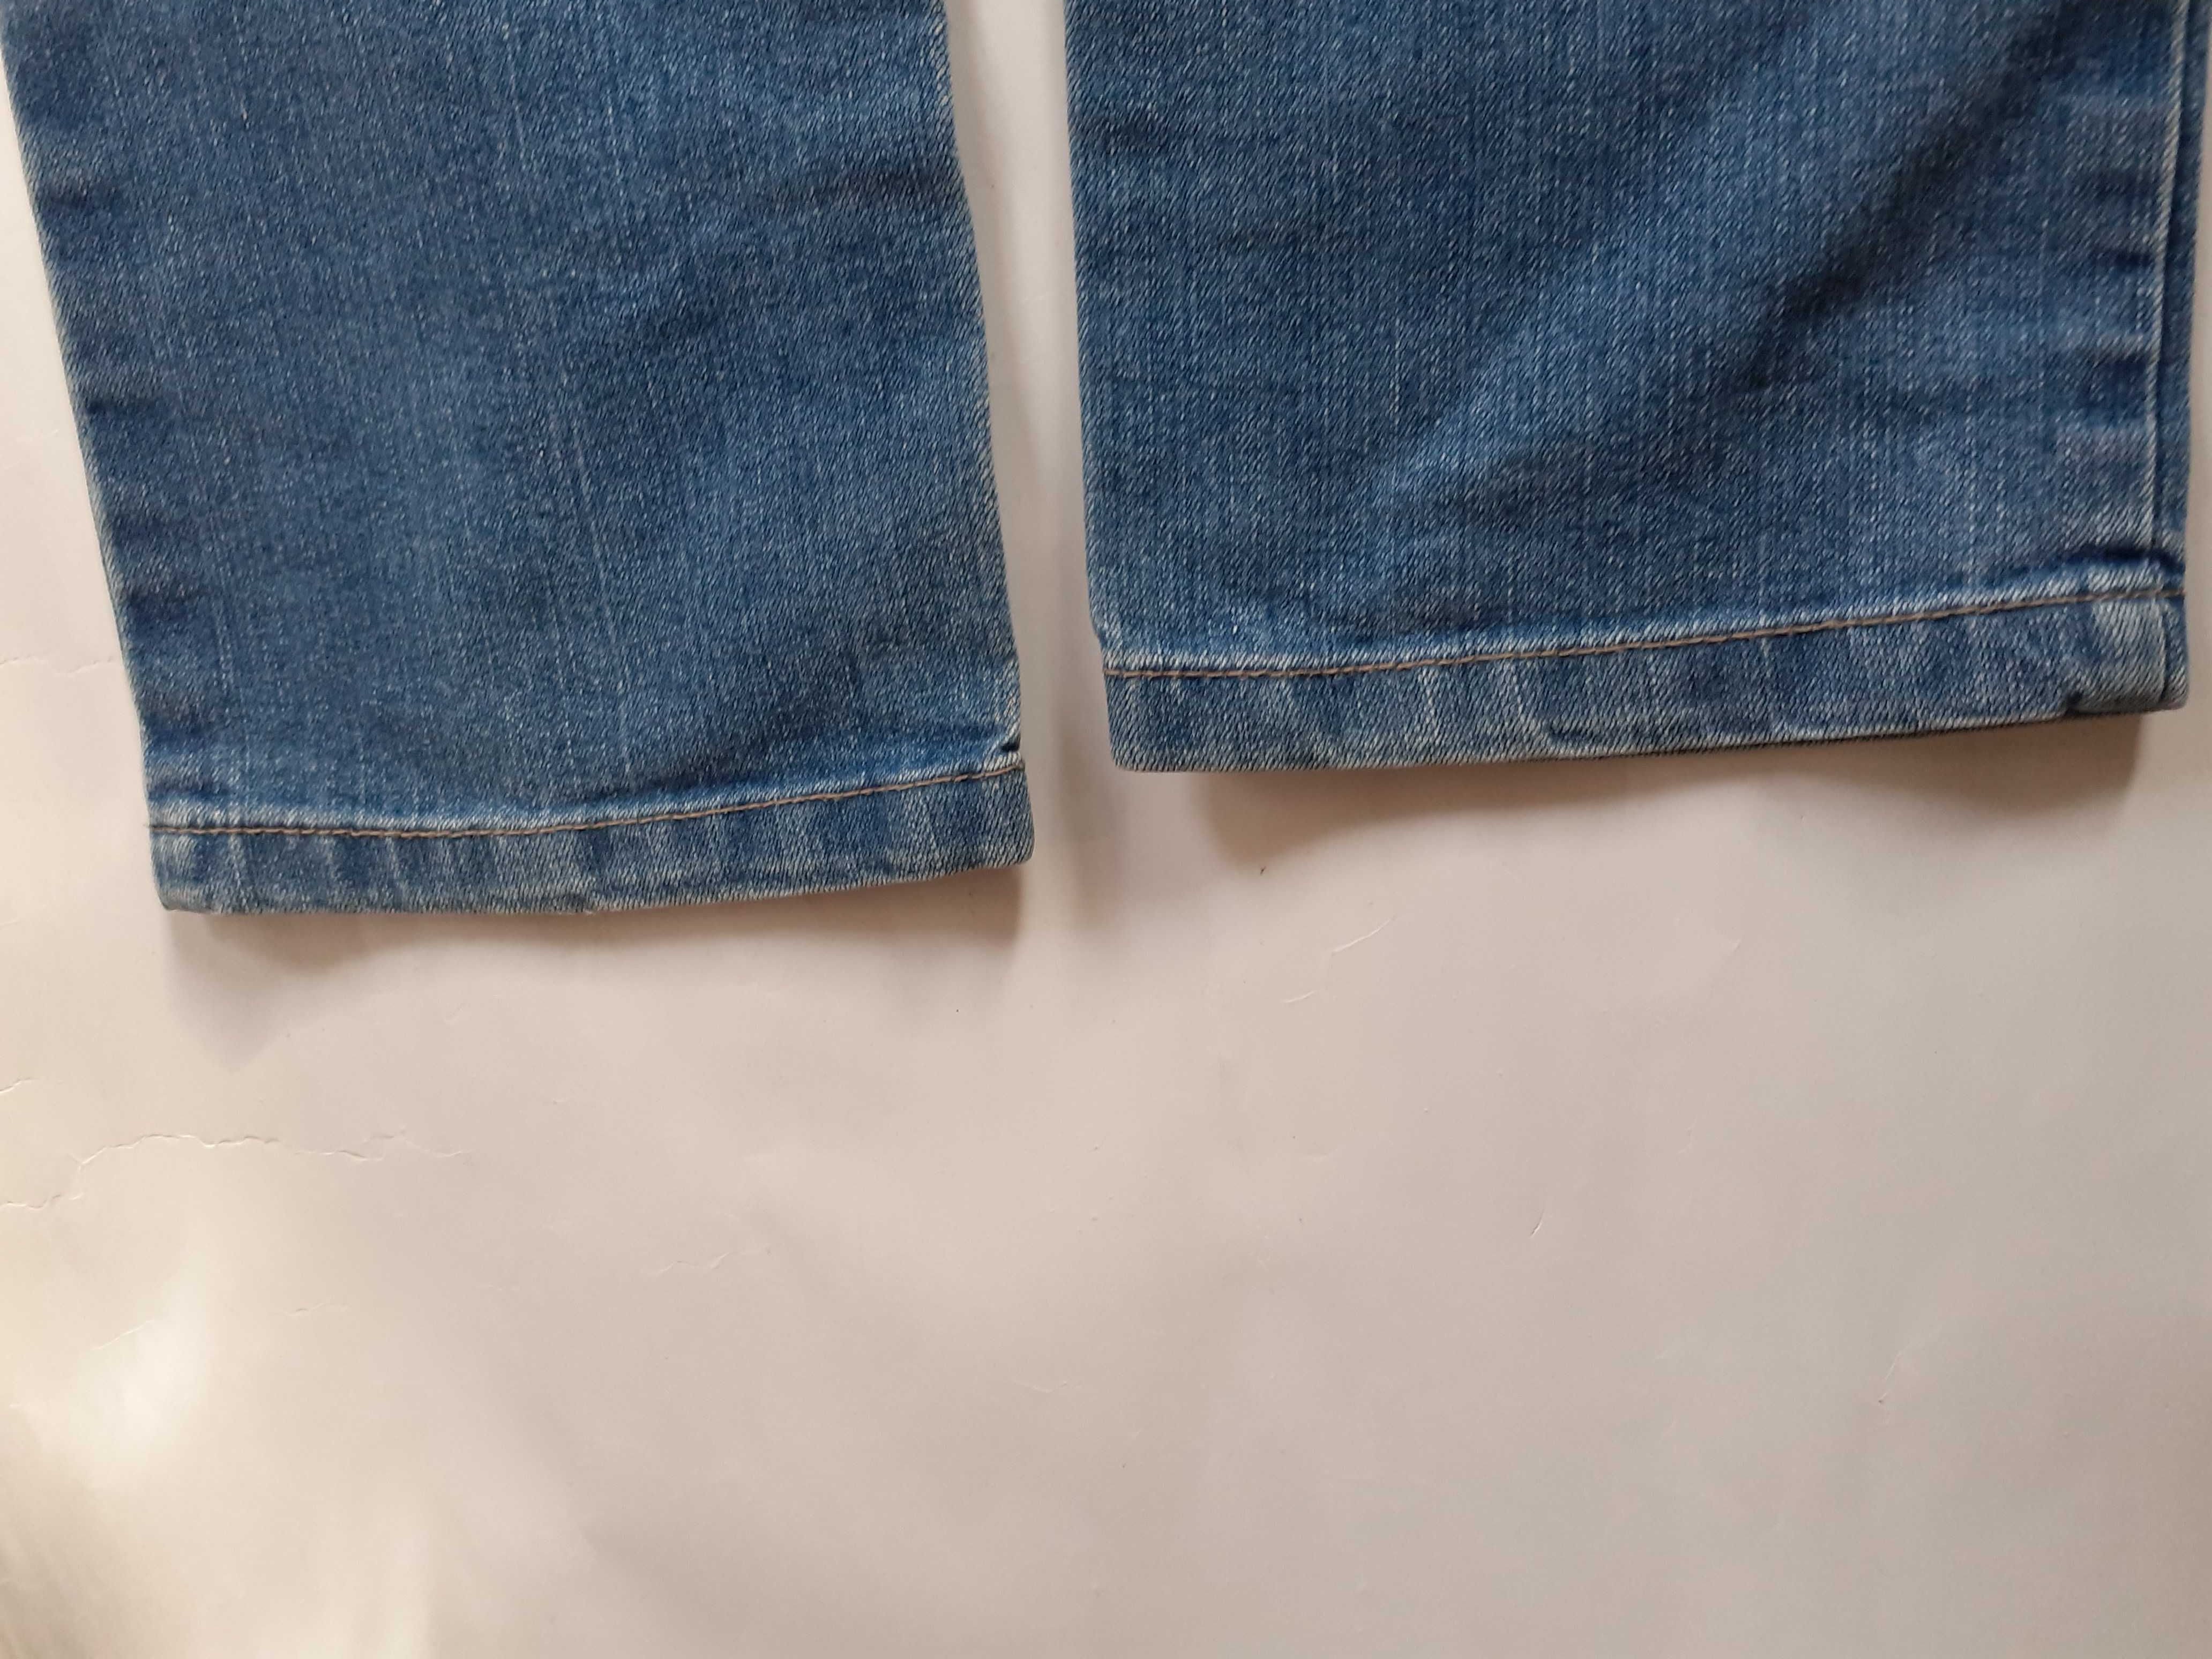 Spodnie dziewczęce - jeans - r. 128